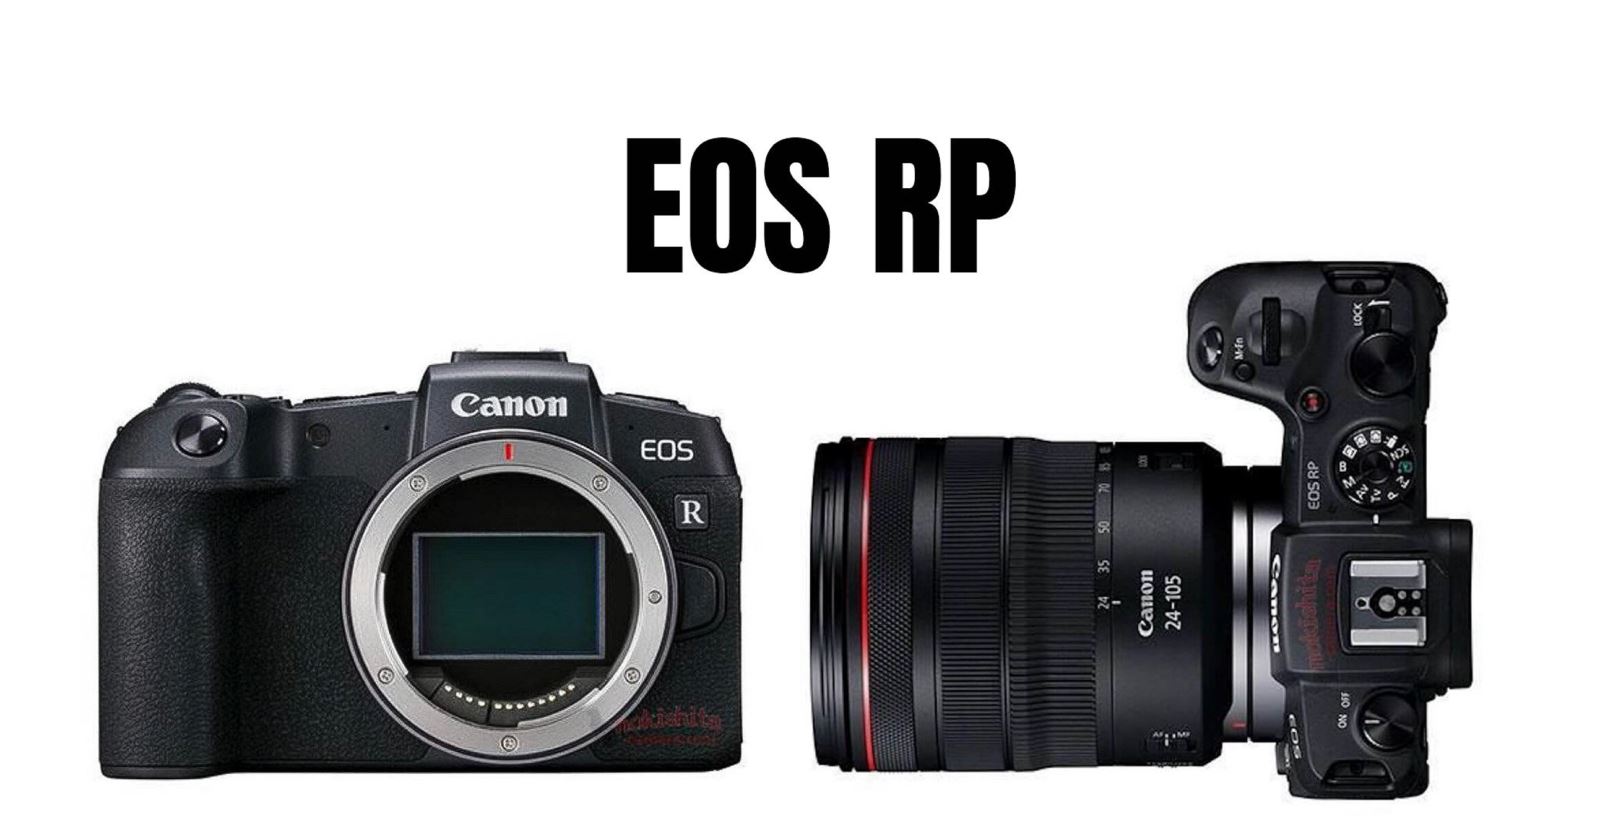 Rò rỉ hình ảnh cùng các thông số kỹ thuật của Canon EOS RP